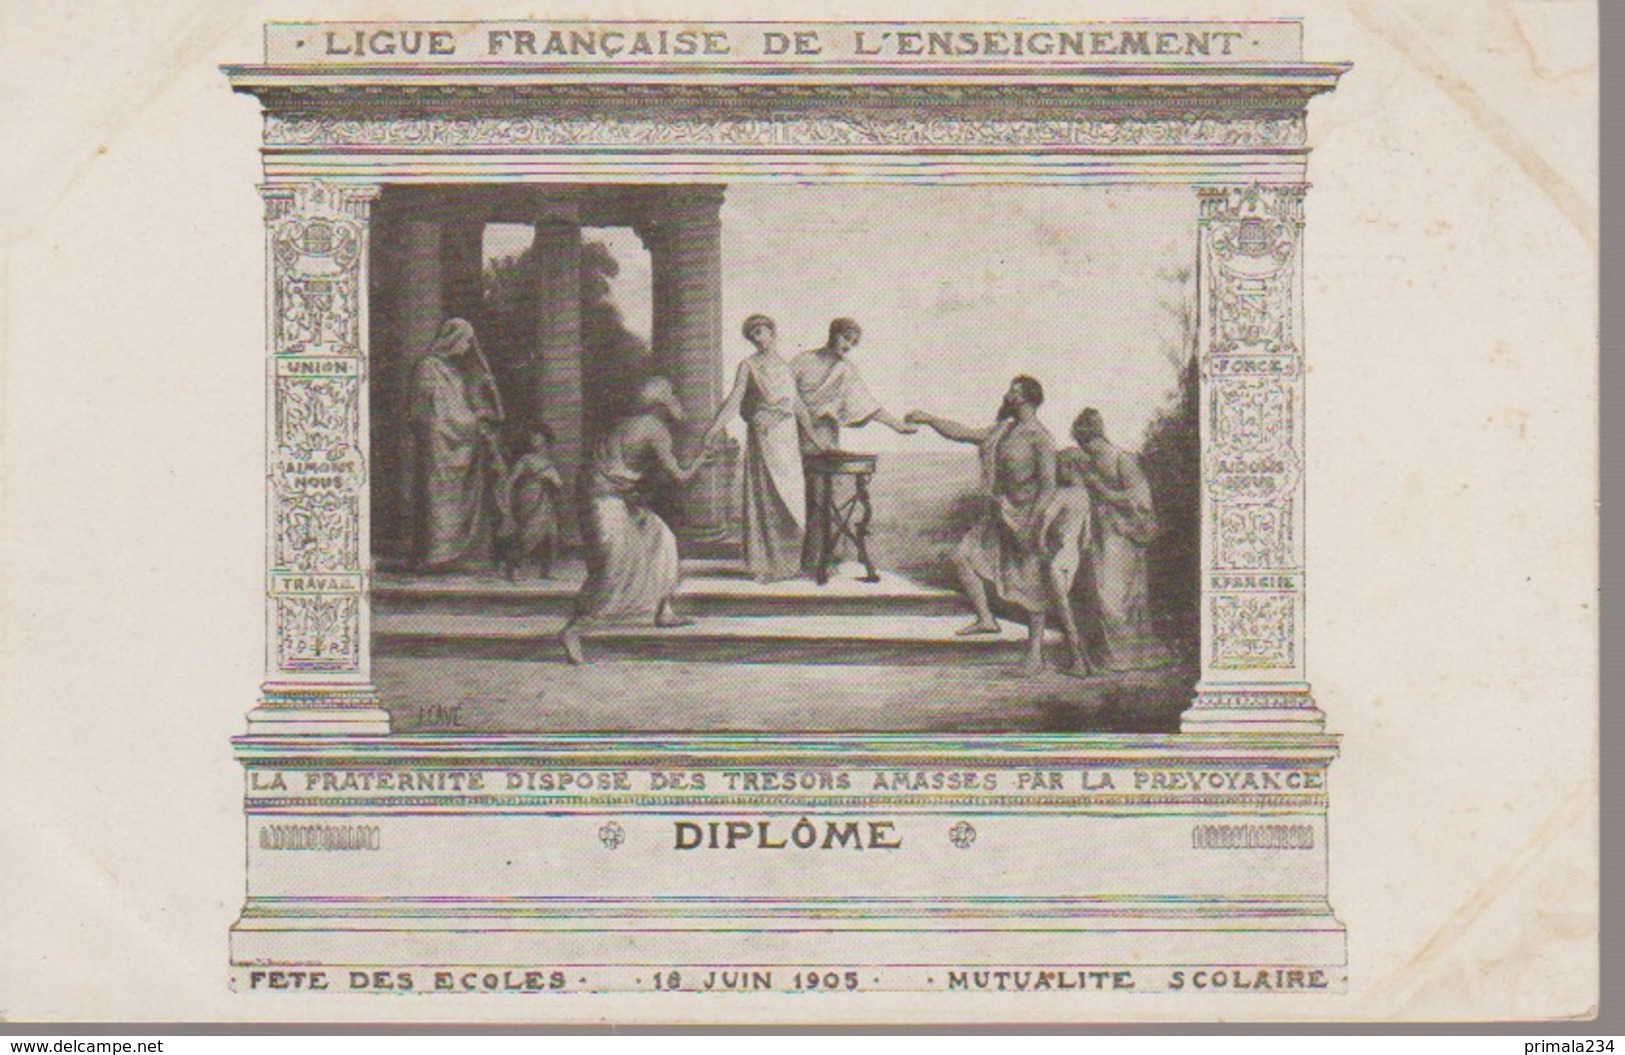 DIPLOME DE LIGUE FRANCAISE DE L ENSEIGNEMENT -16/6/1905 - Ecoles